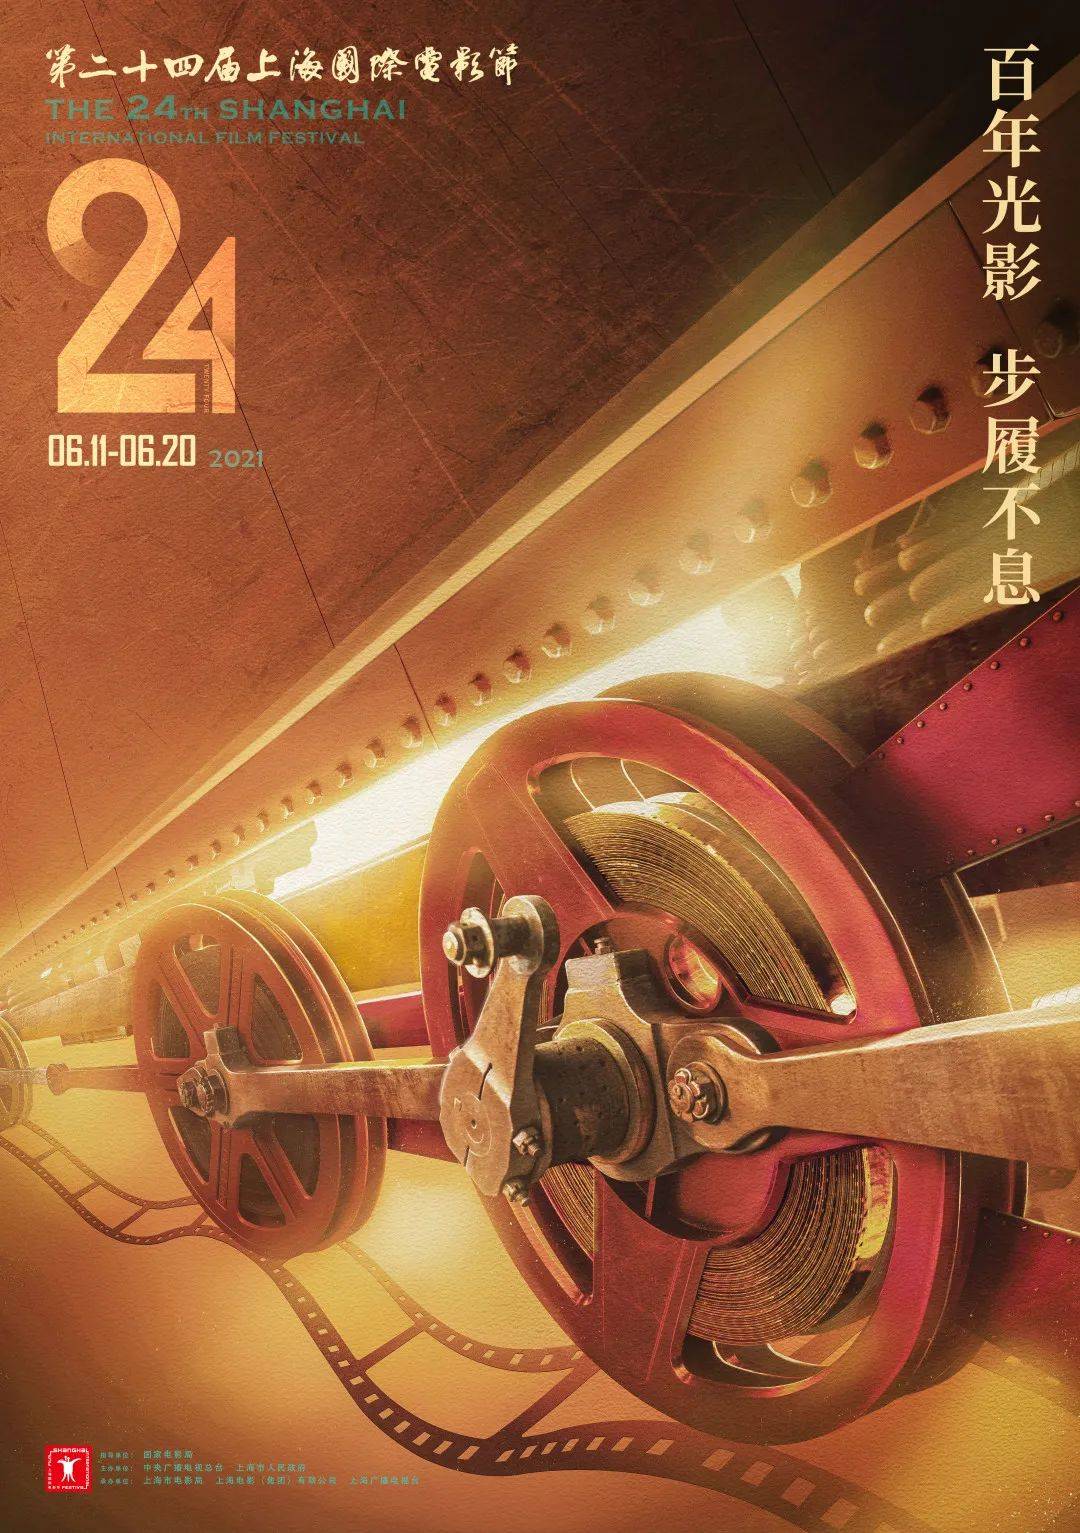 5月24日,本届上海国际电影节的官方海报正式发布,放映机和胶片元素